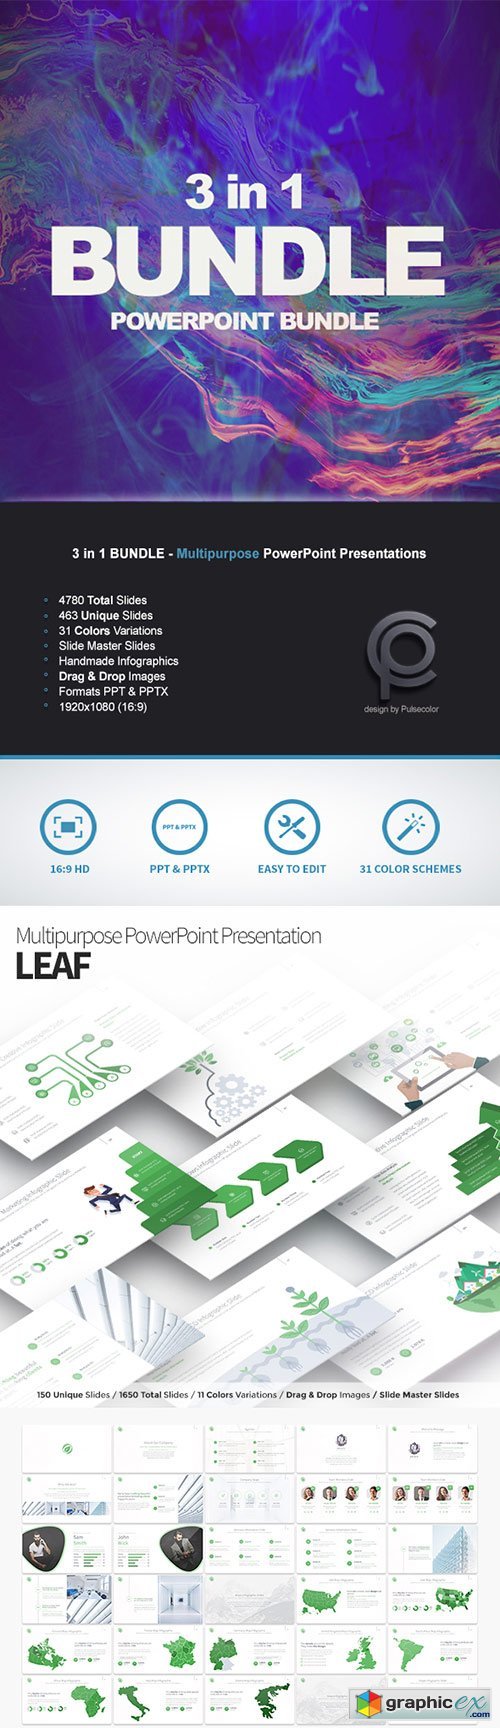 BUNDLE 3in1 - Multipurpose PowerPoint Presentations